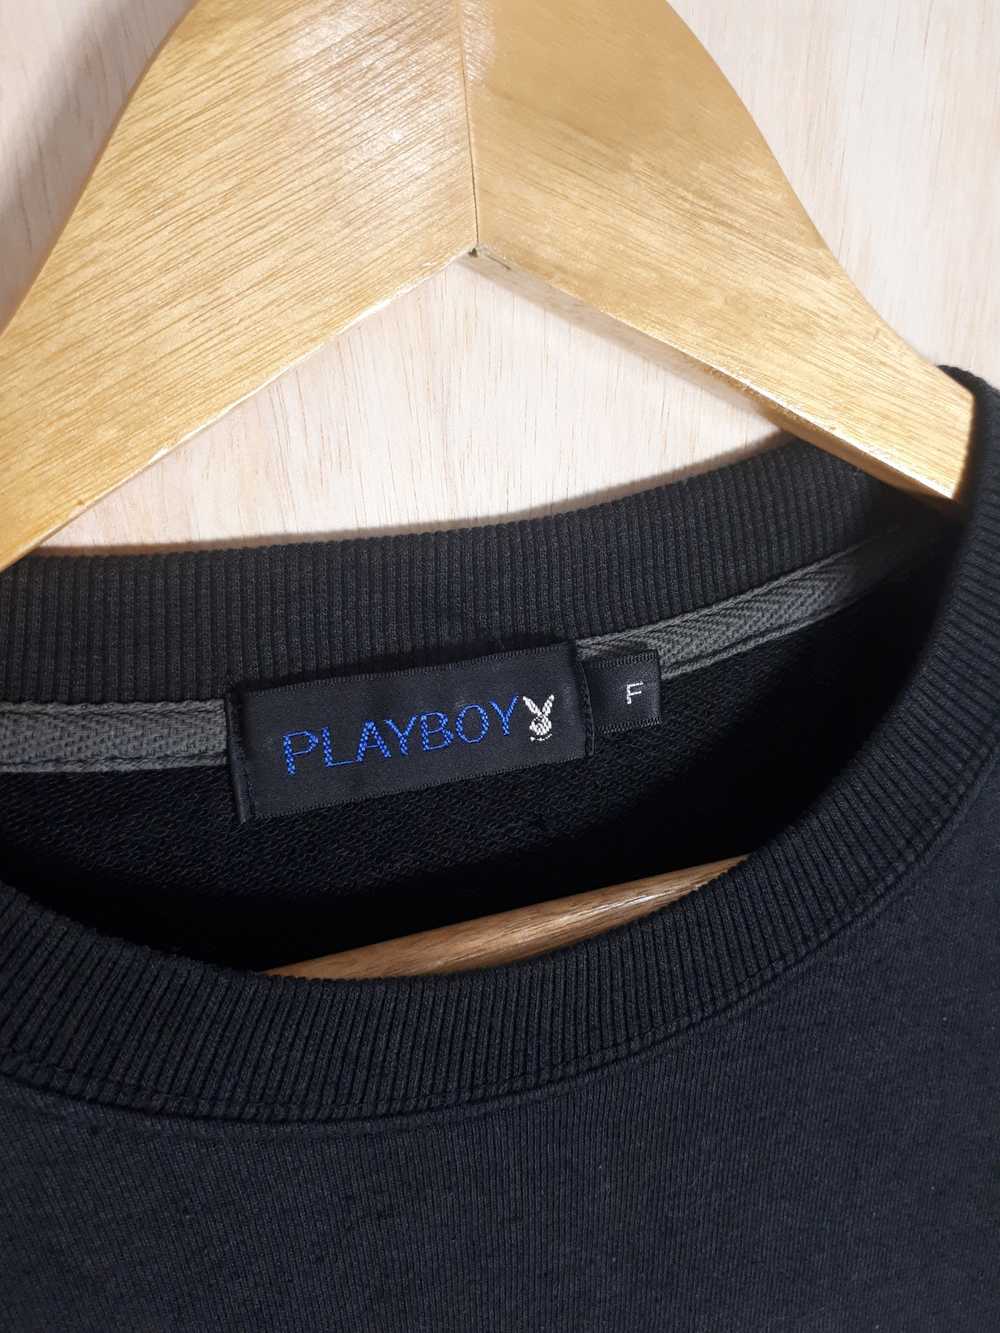 Playboy × Streetwear Vintage Sweatshirt Playboy s… - image 4